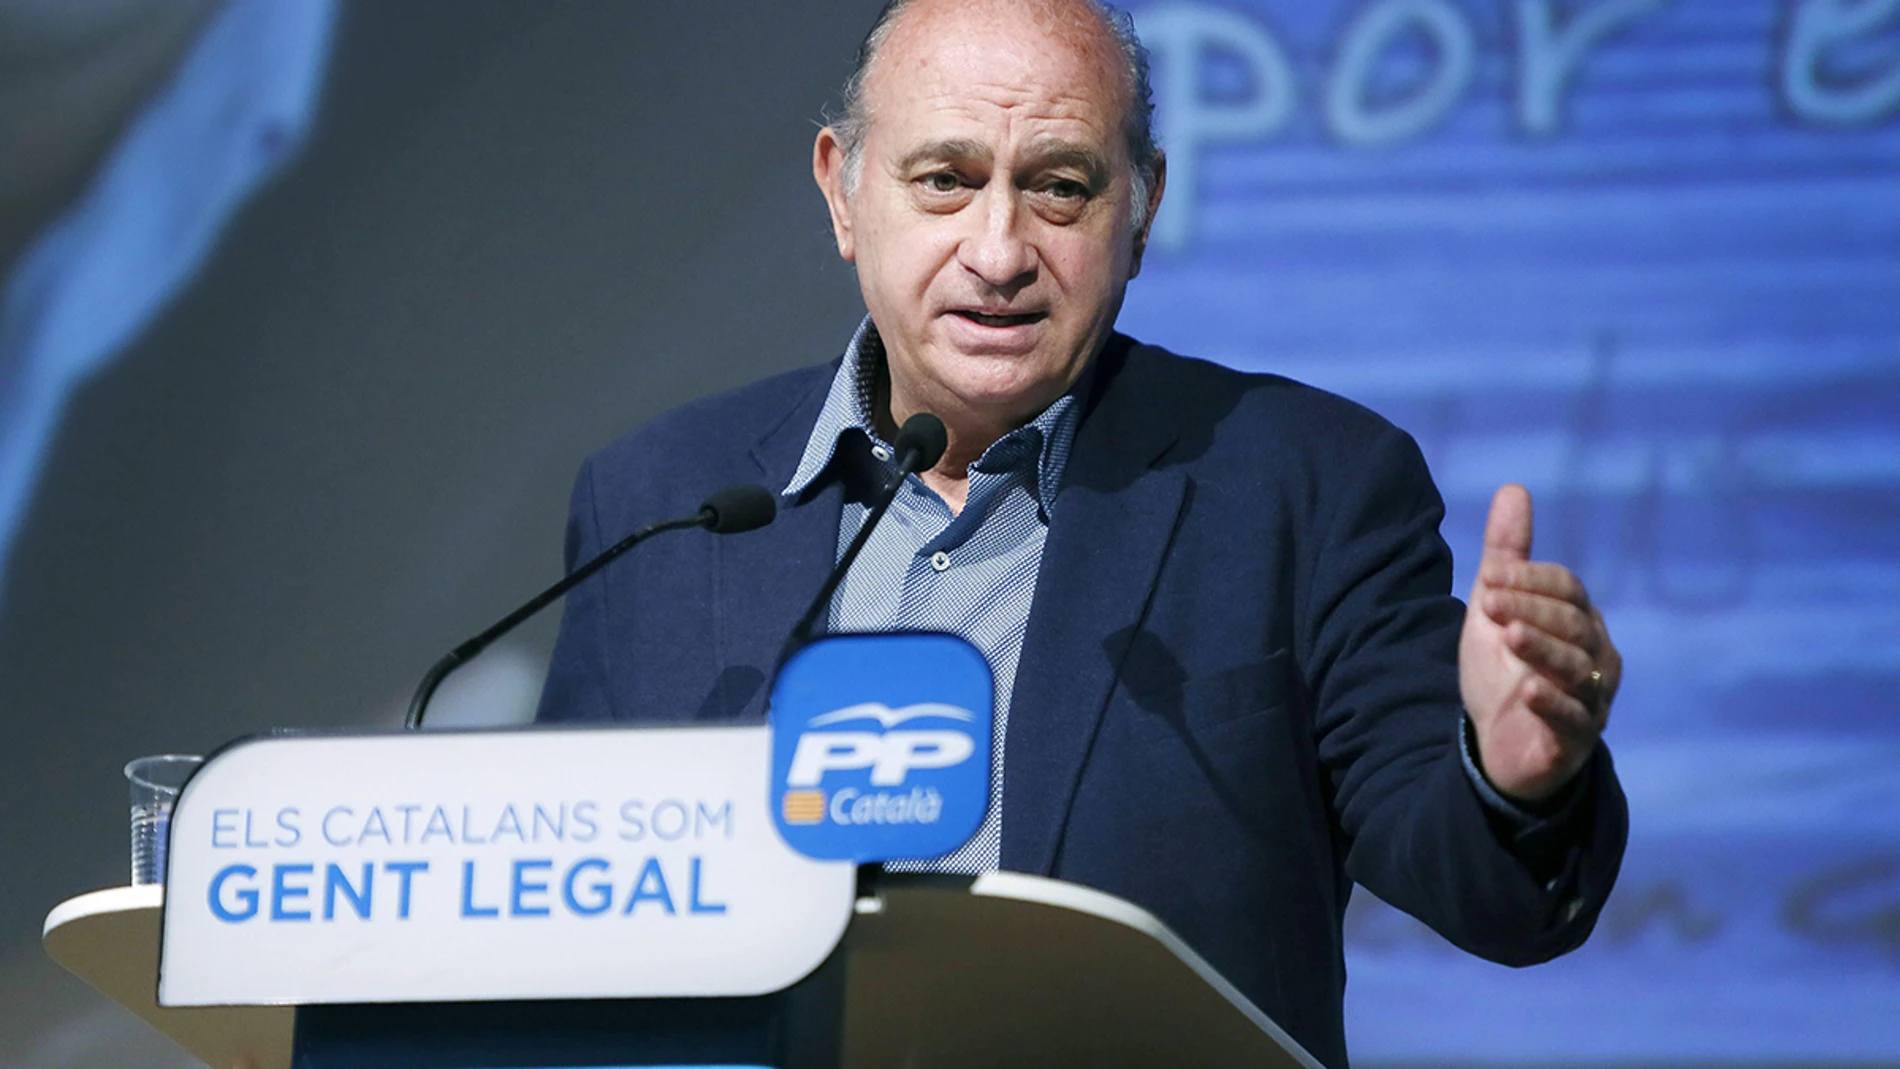 El ministro de Interior, Jorge Fernández Díaz, durante su intervención en el acto de presentación del candidato del PPC a la alcaldía de Sabadell